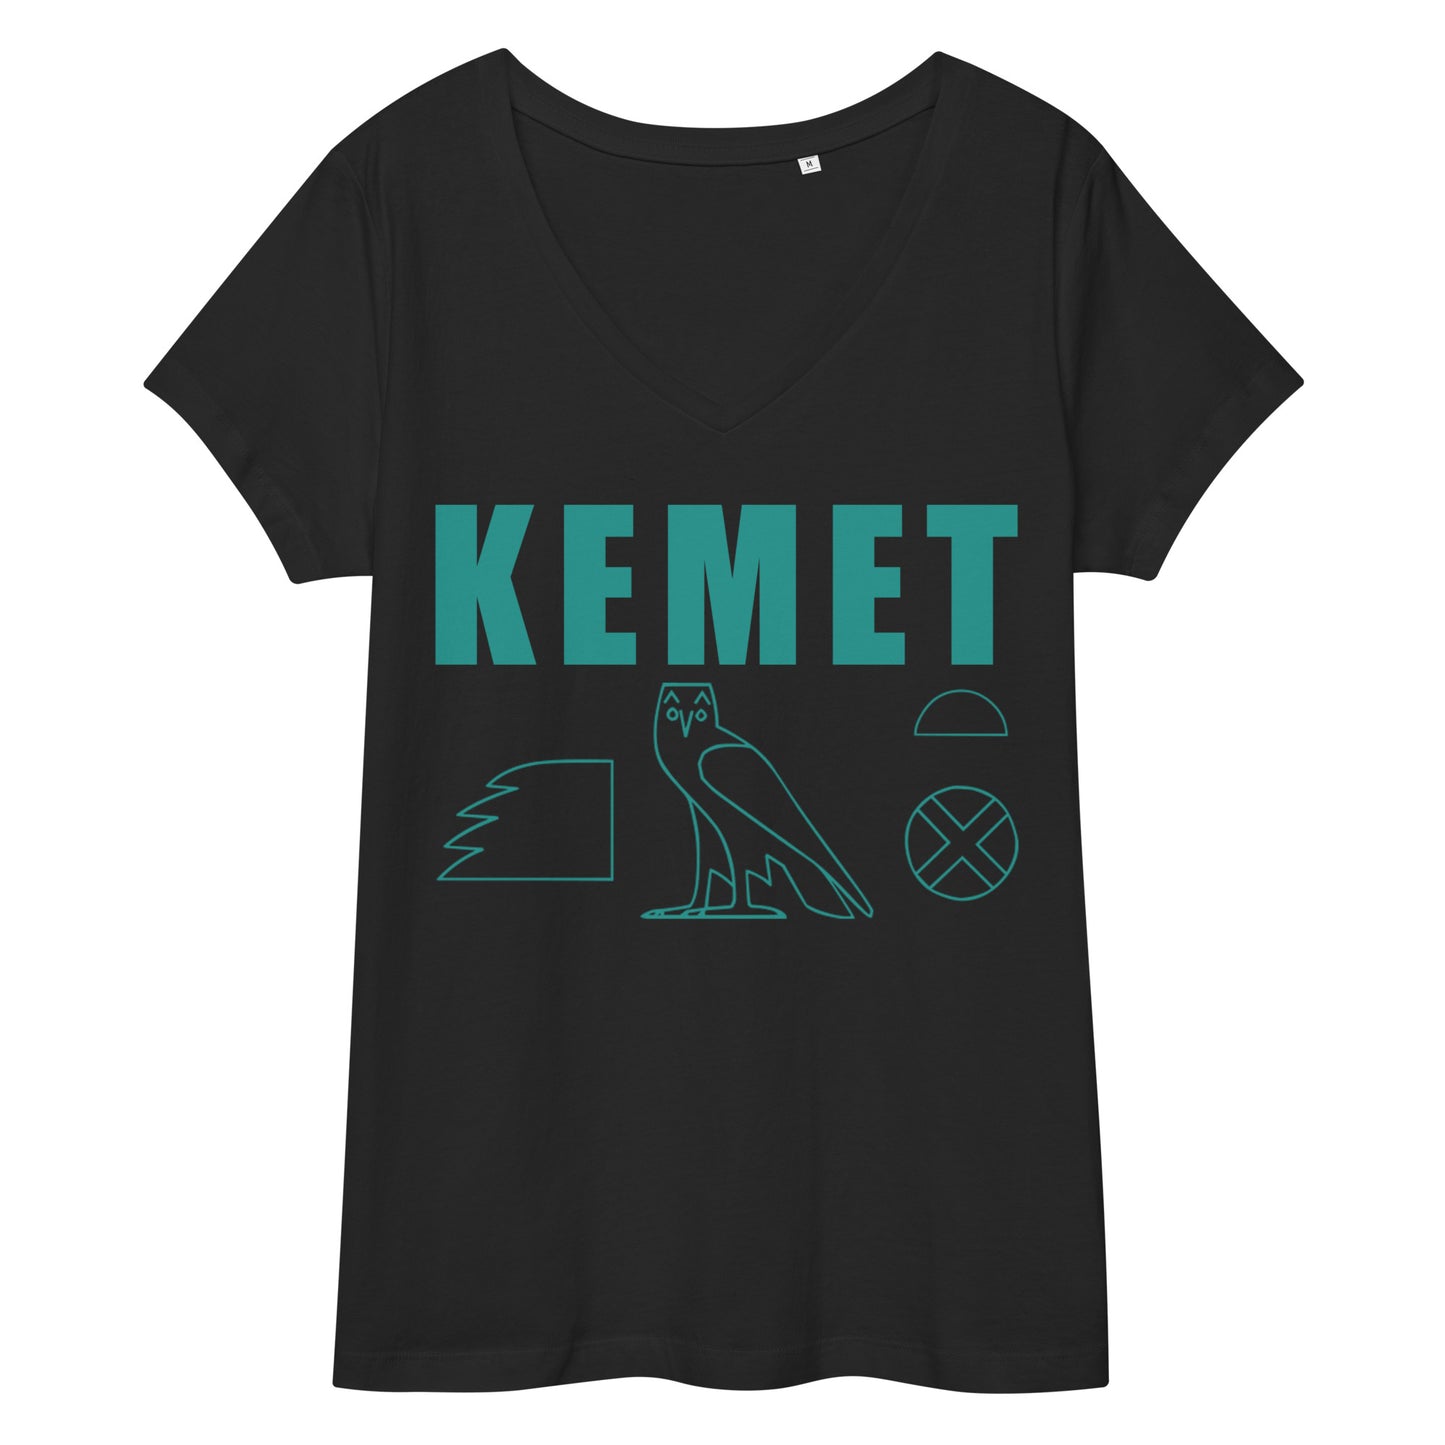 MAAT FOREVER Women’s fitted v-neck t-shirt KEMET